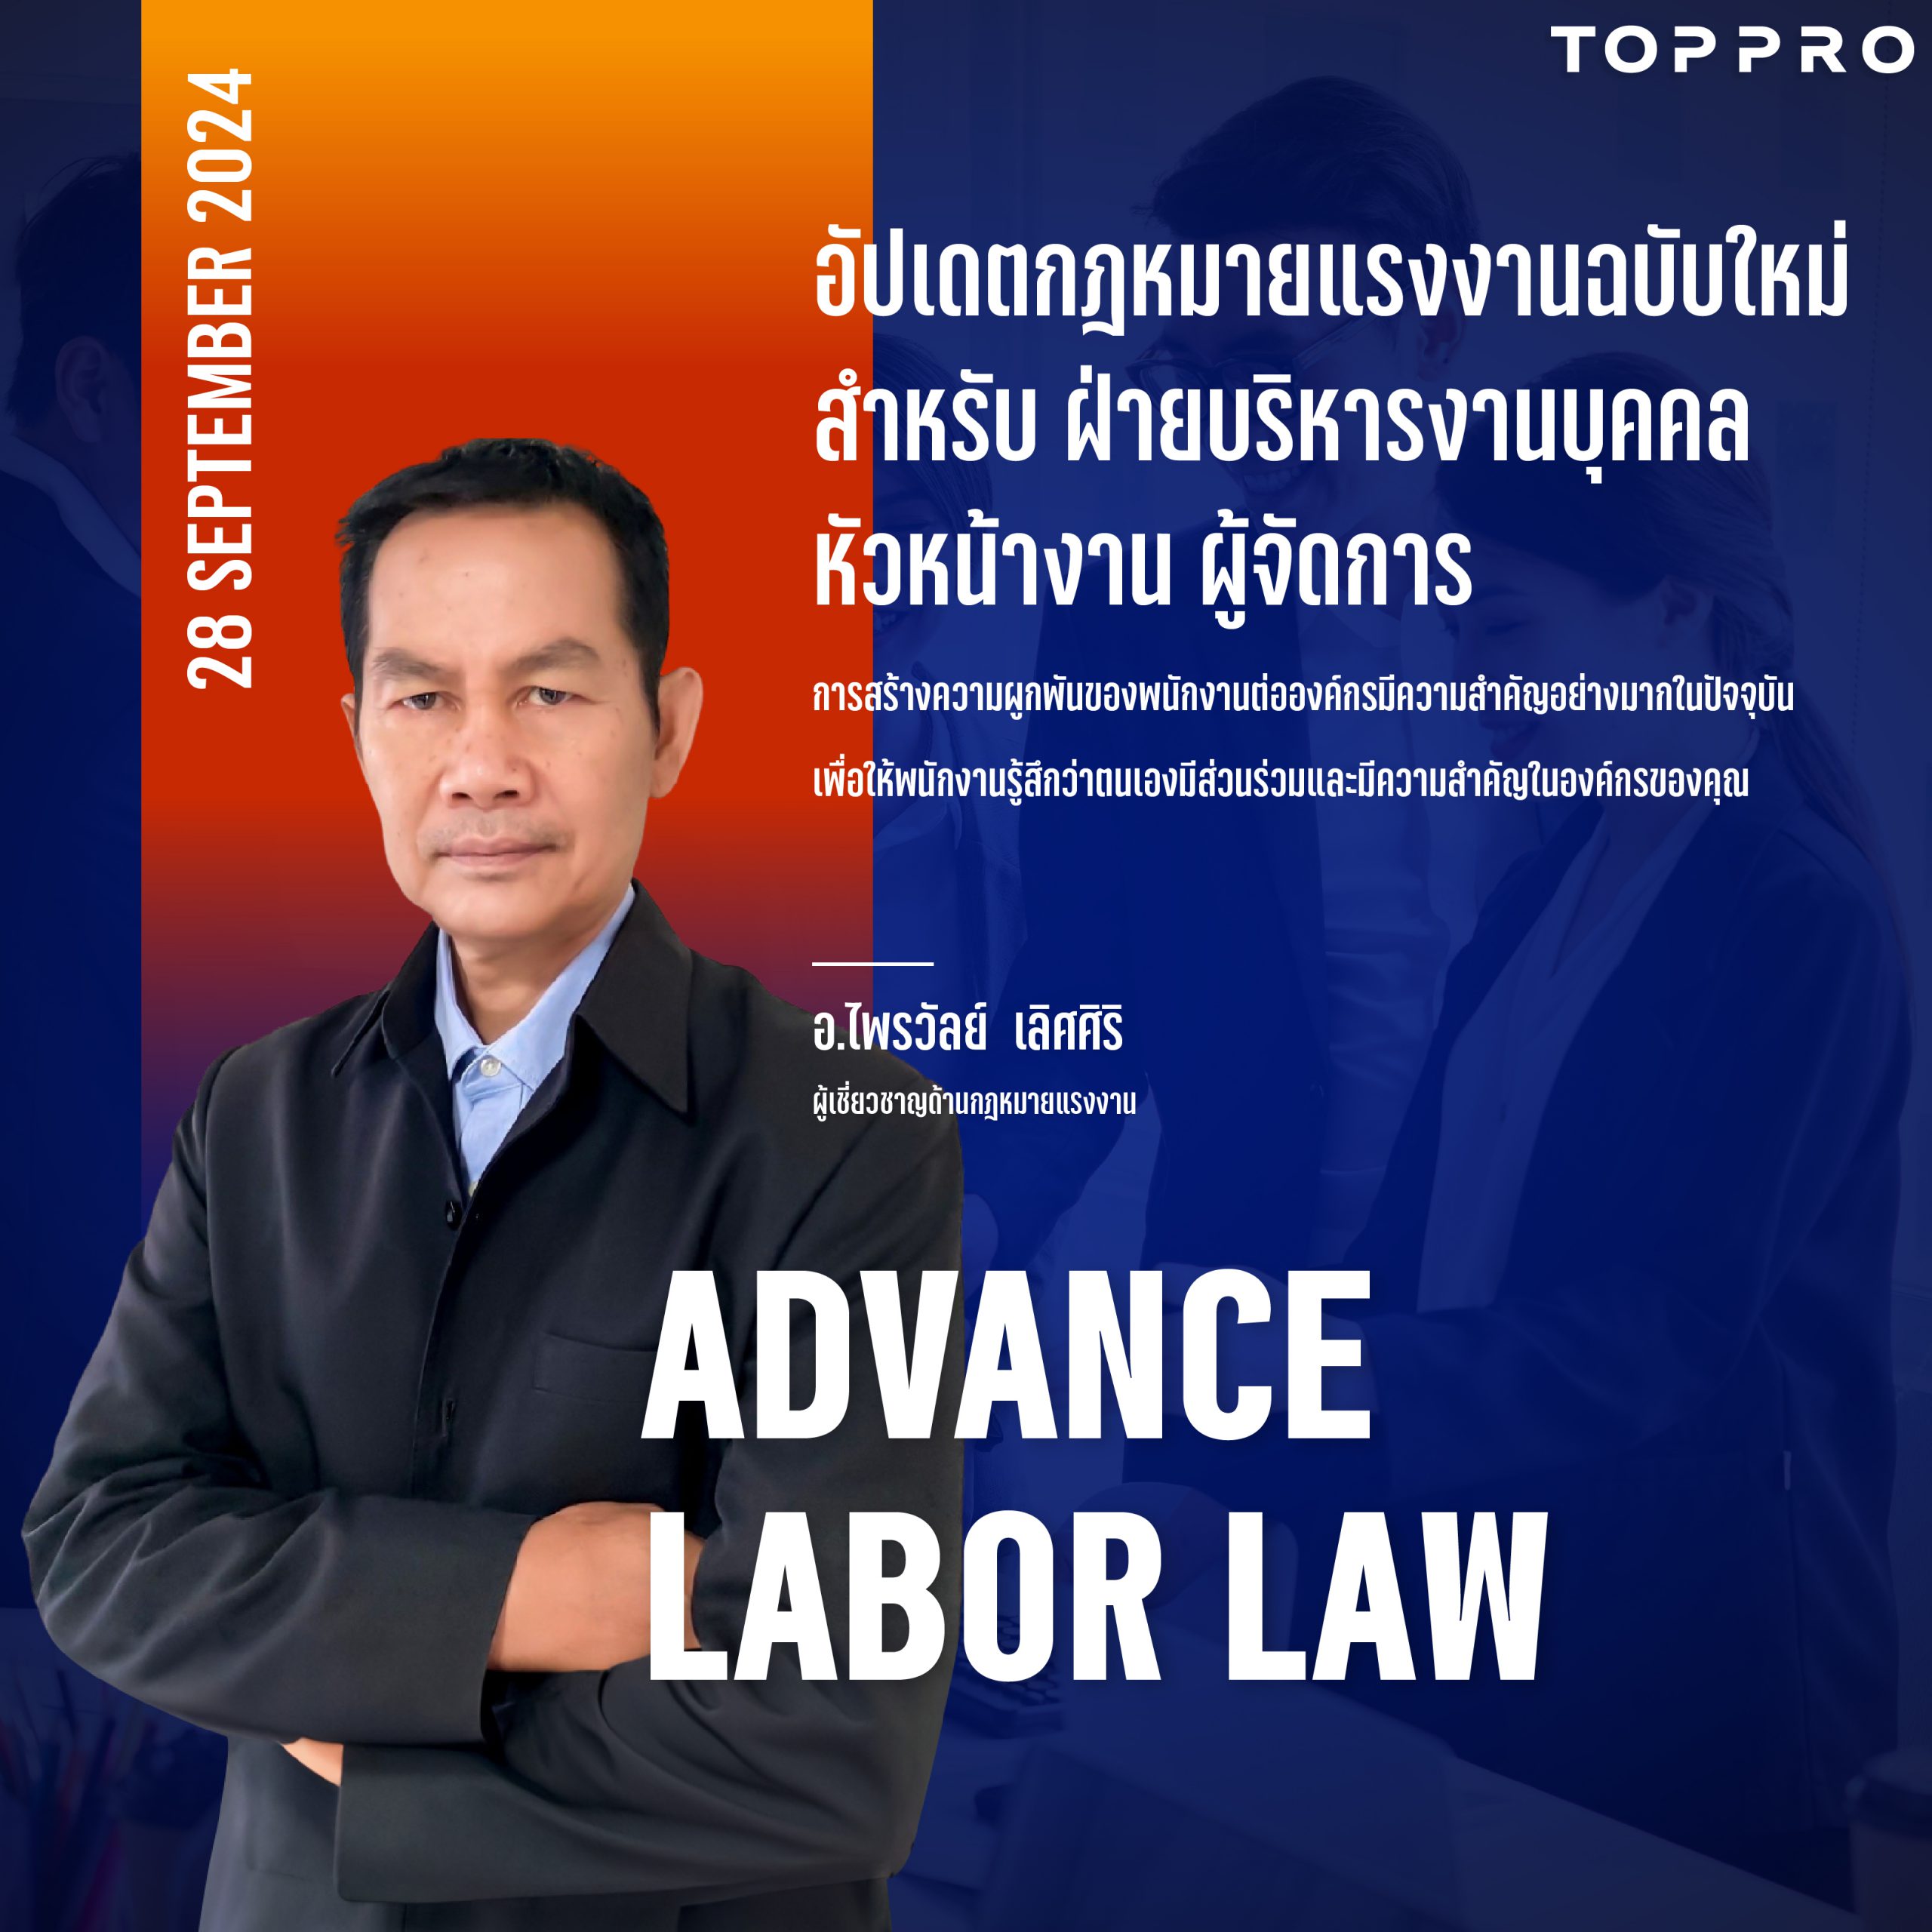 advance labor law